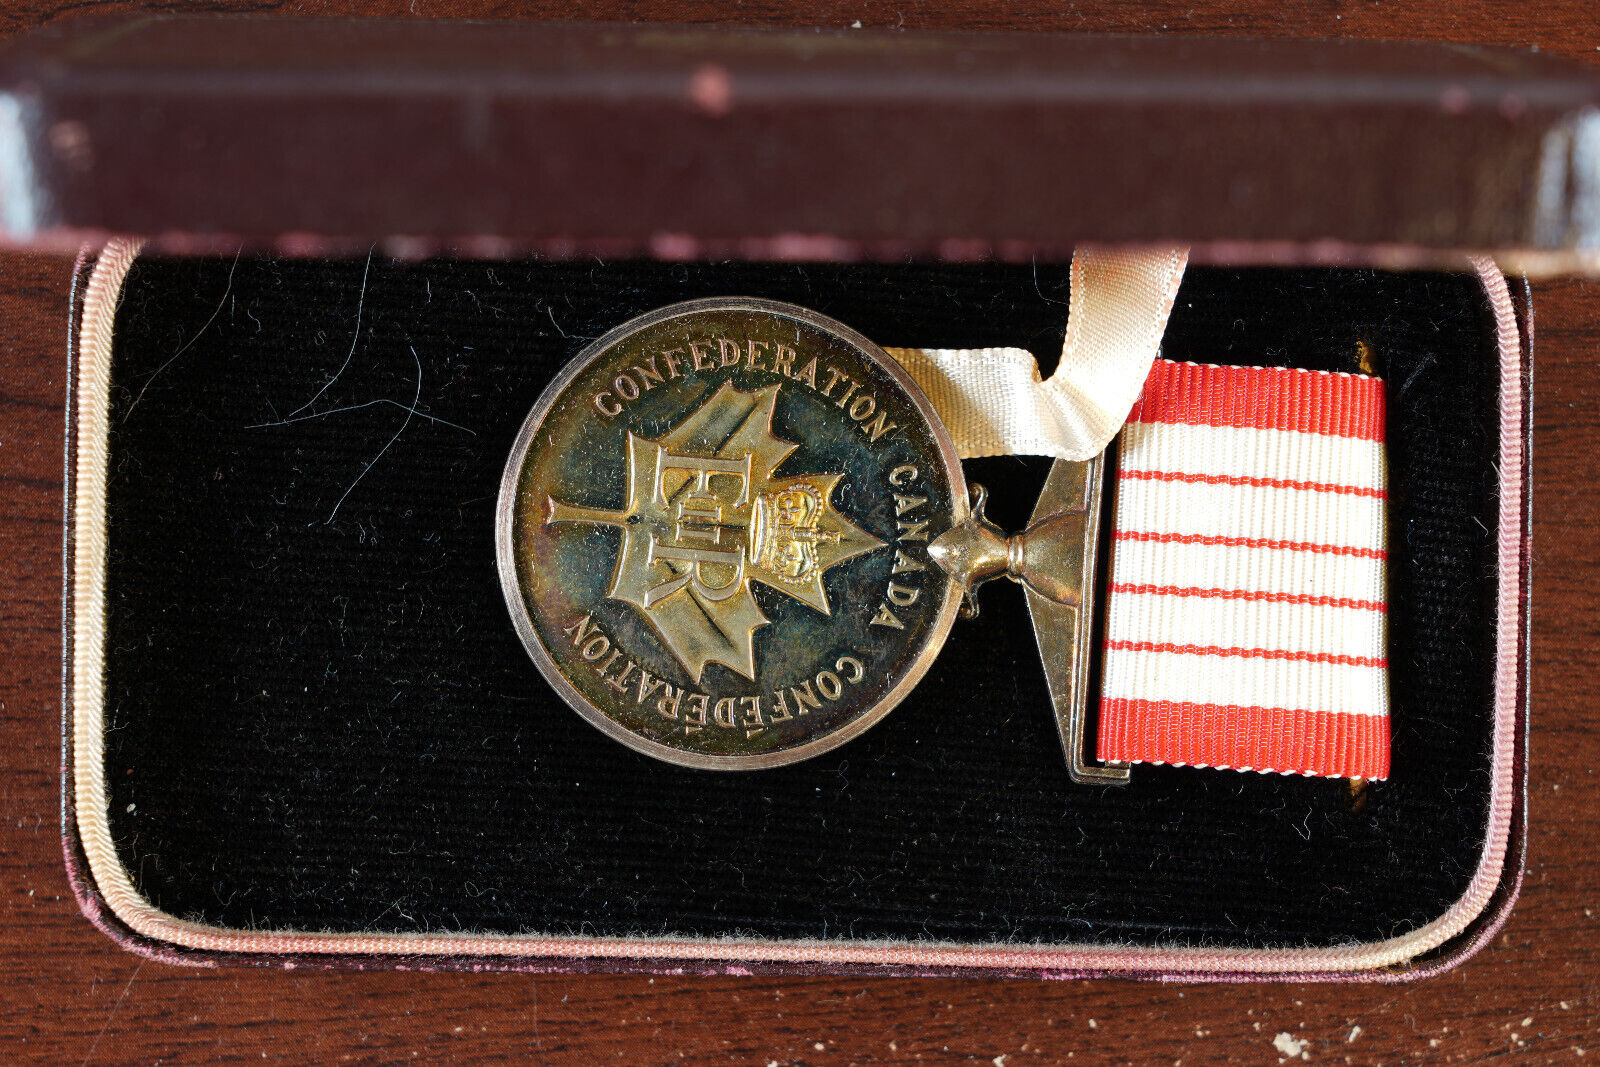 Confederation of Canada Centenary Medal 1867-1967